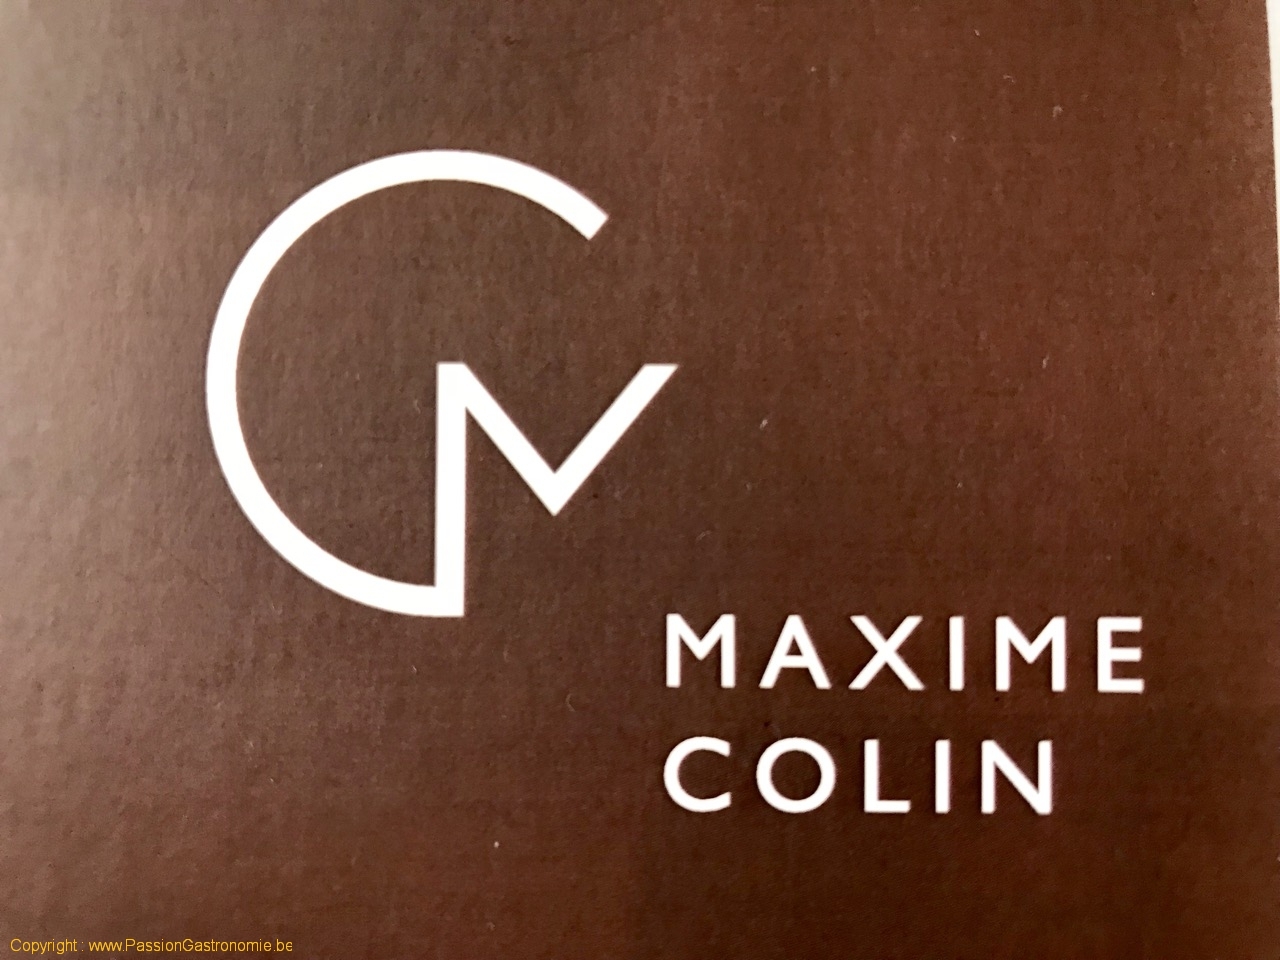 Restaurant Maxime Colin - Le logo